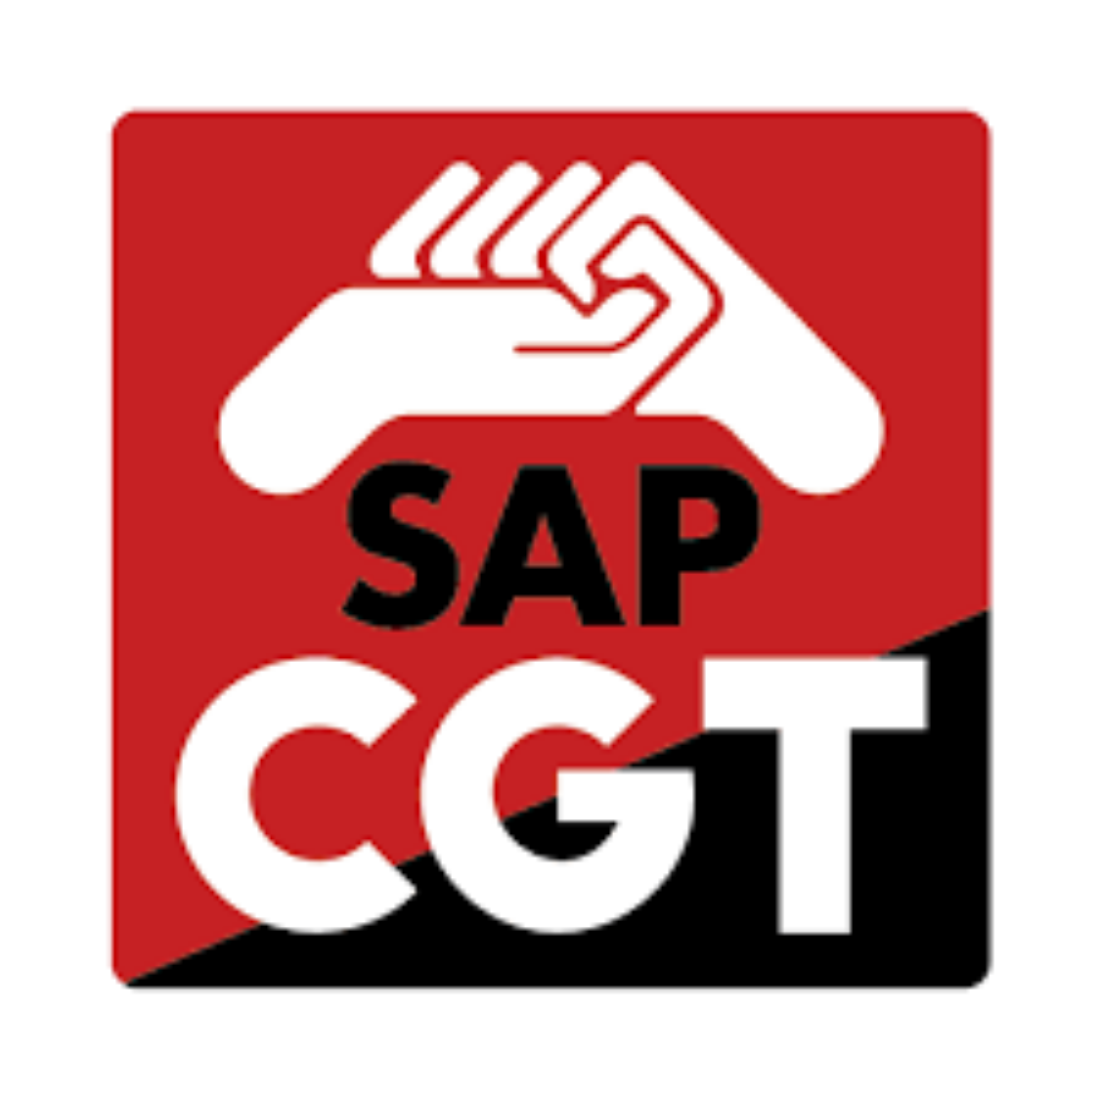 CGT explica que el Sindicato de Administración Pública de Madrid (SAP) no ha vulnerado la Ley de Protección de Datos